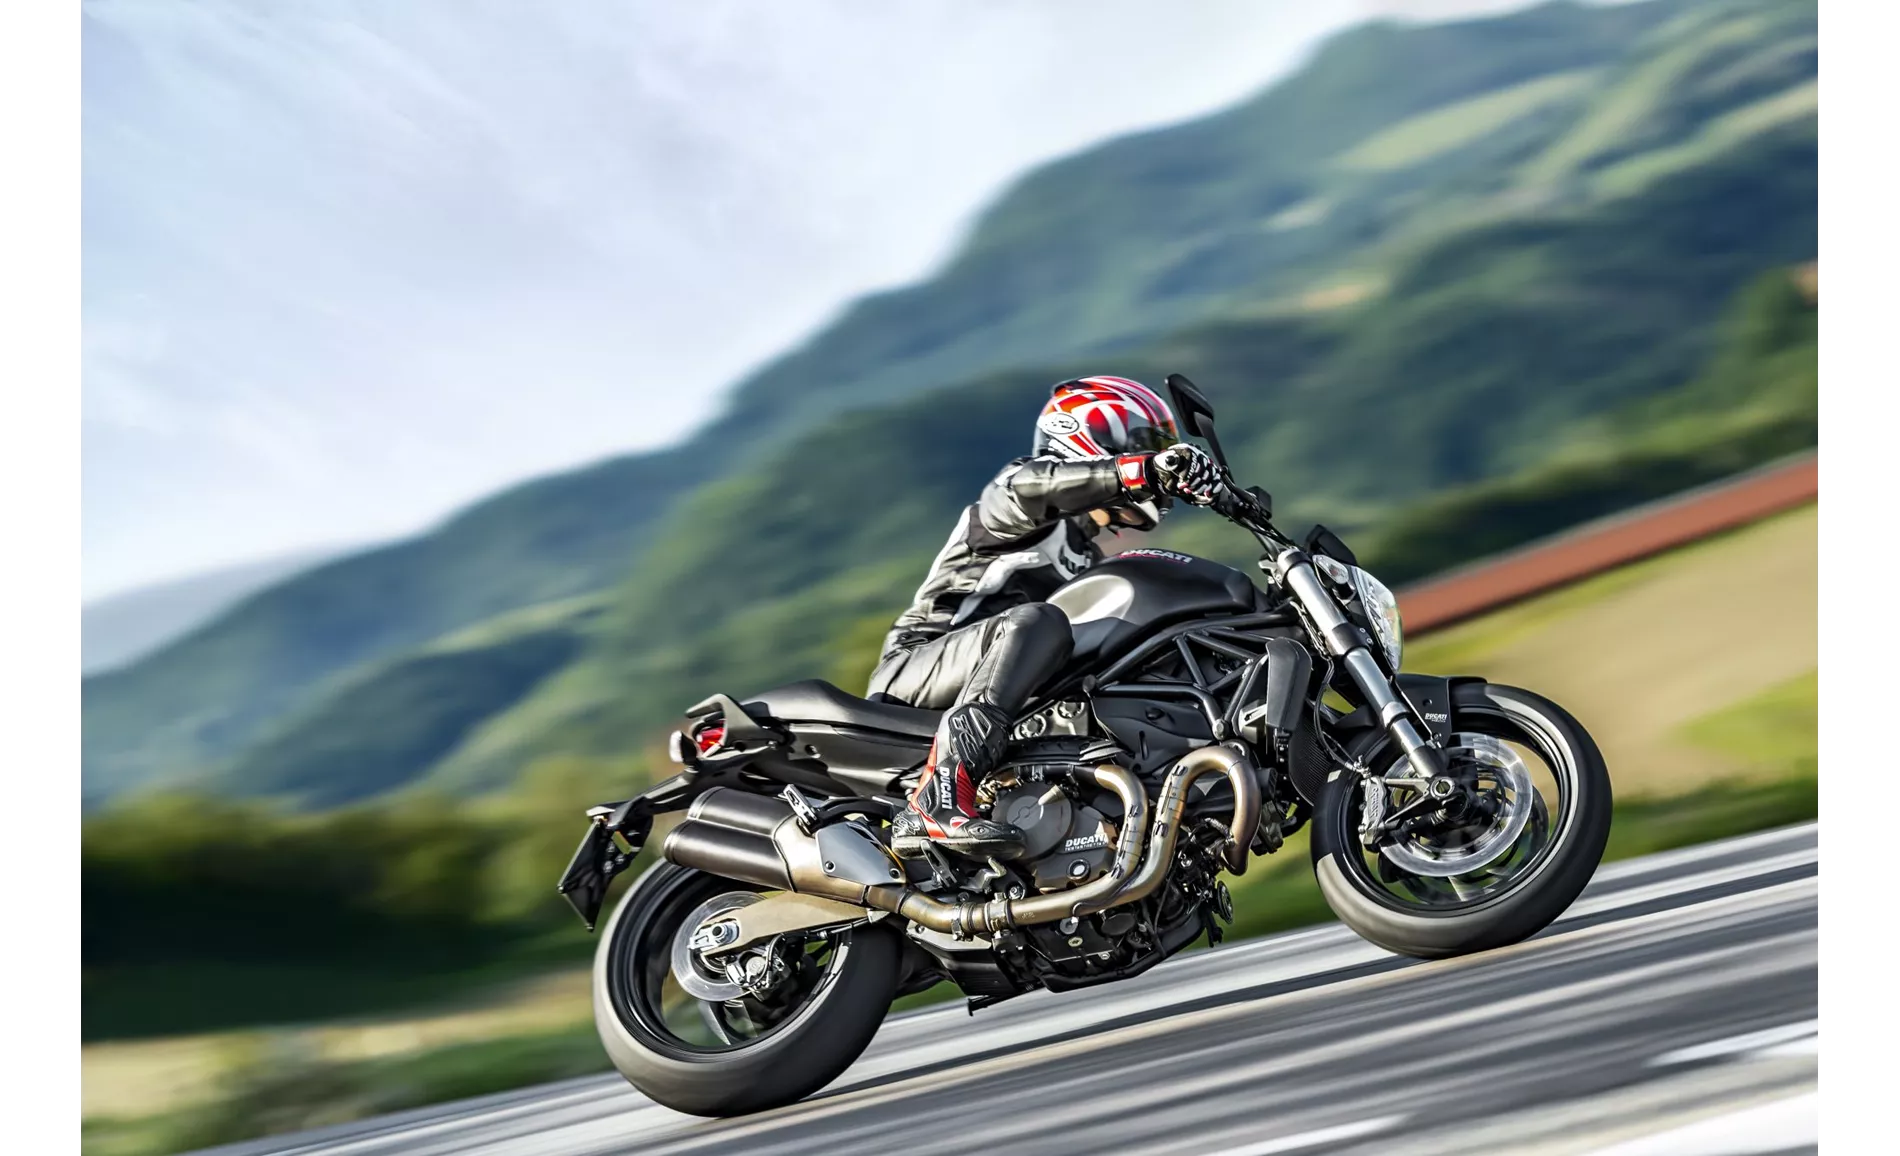 Ducati Monster 821 2015